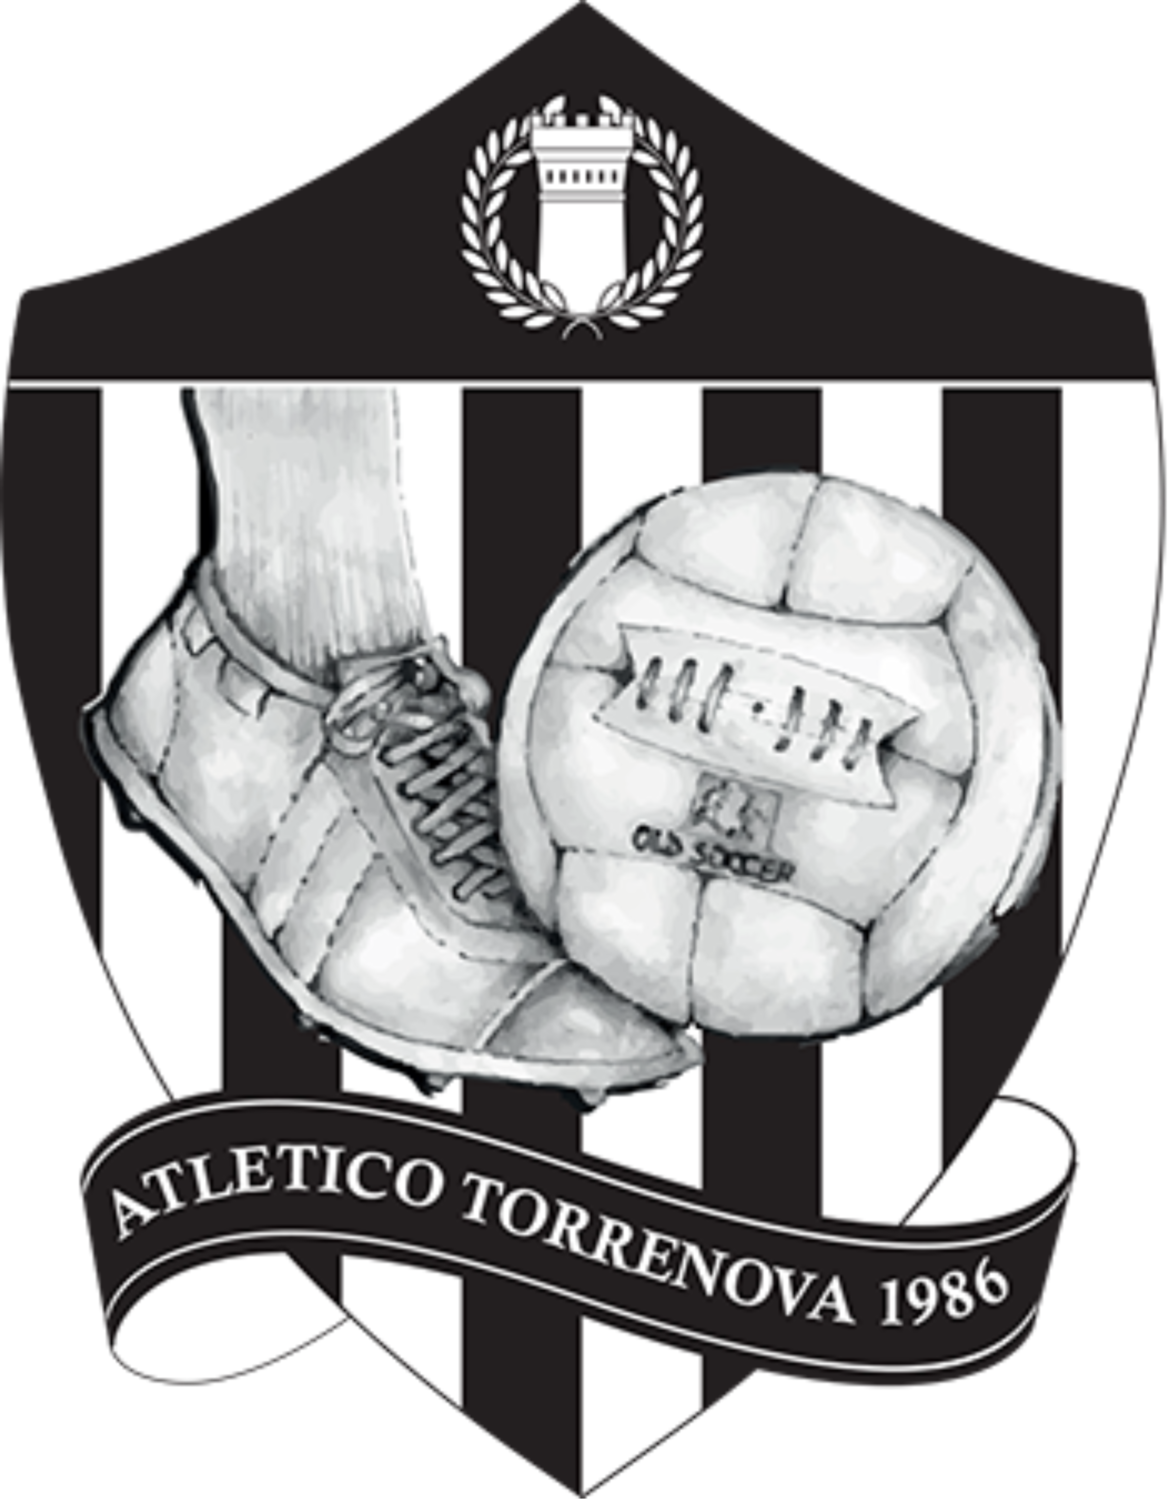 Atletico Torrenova 1986